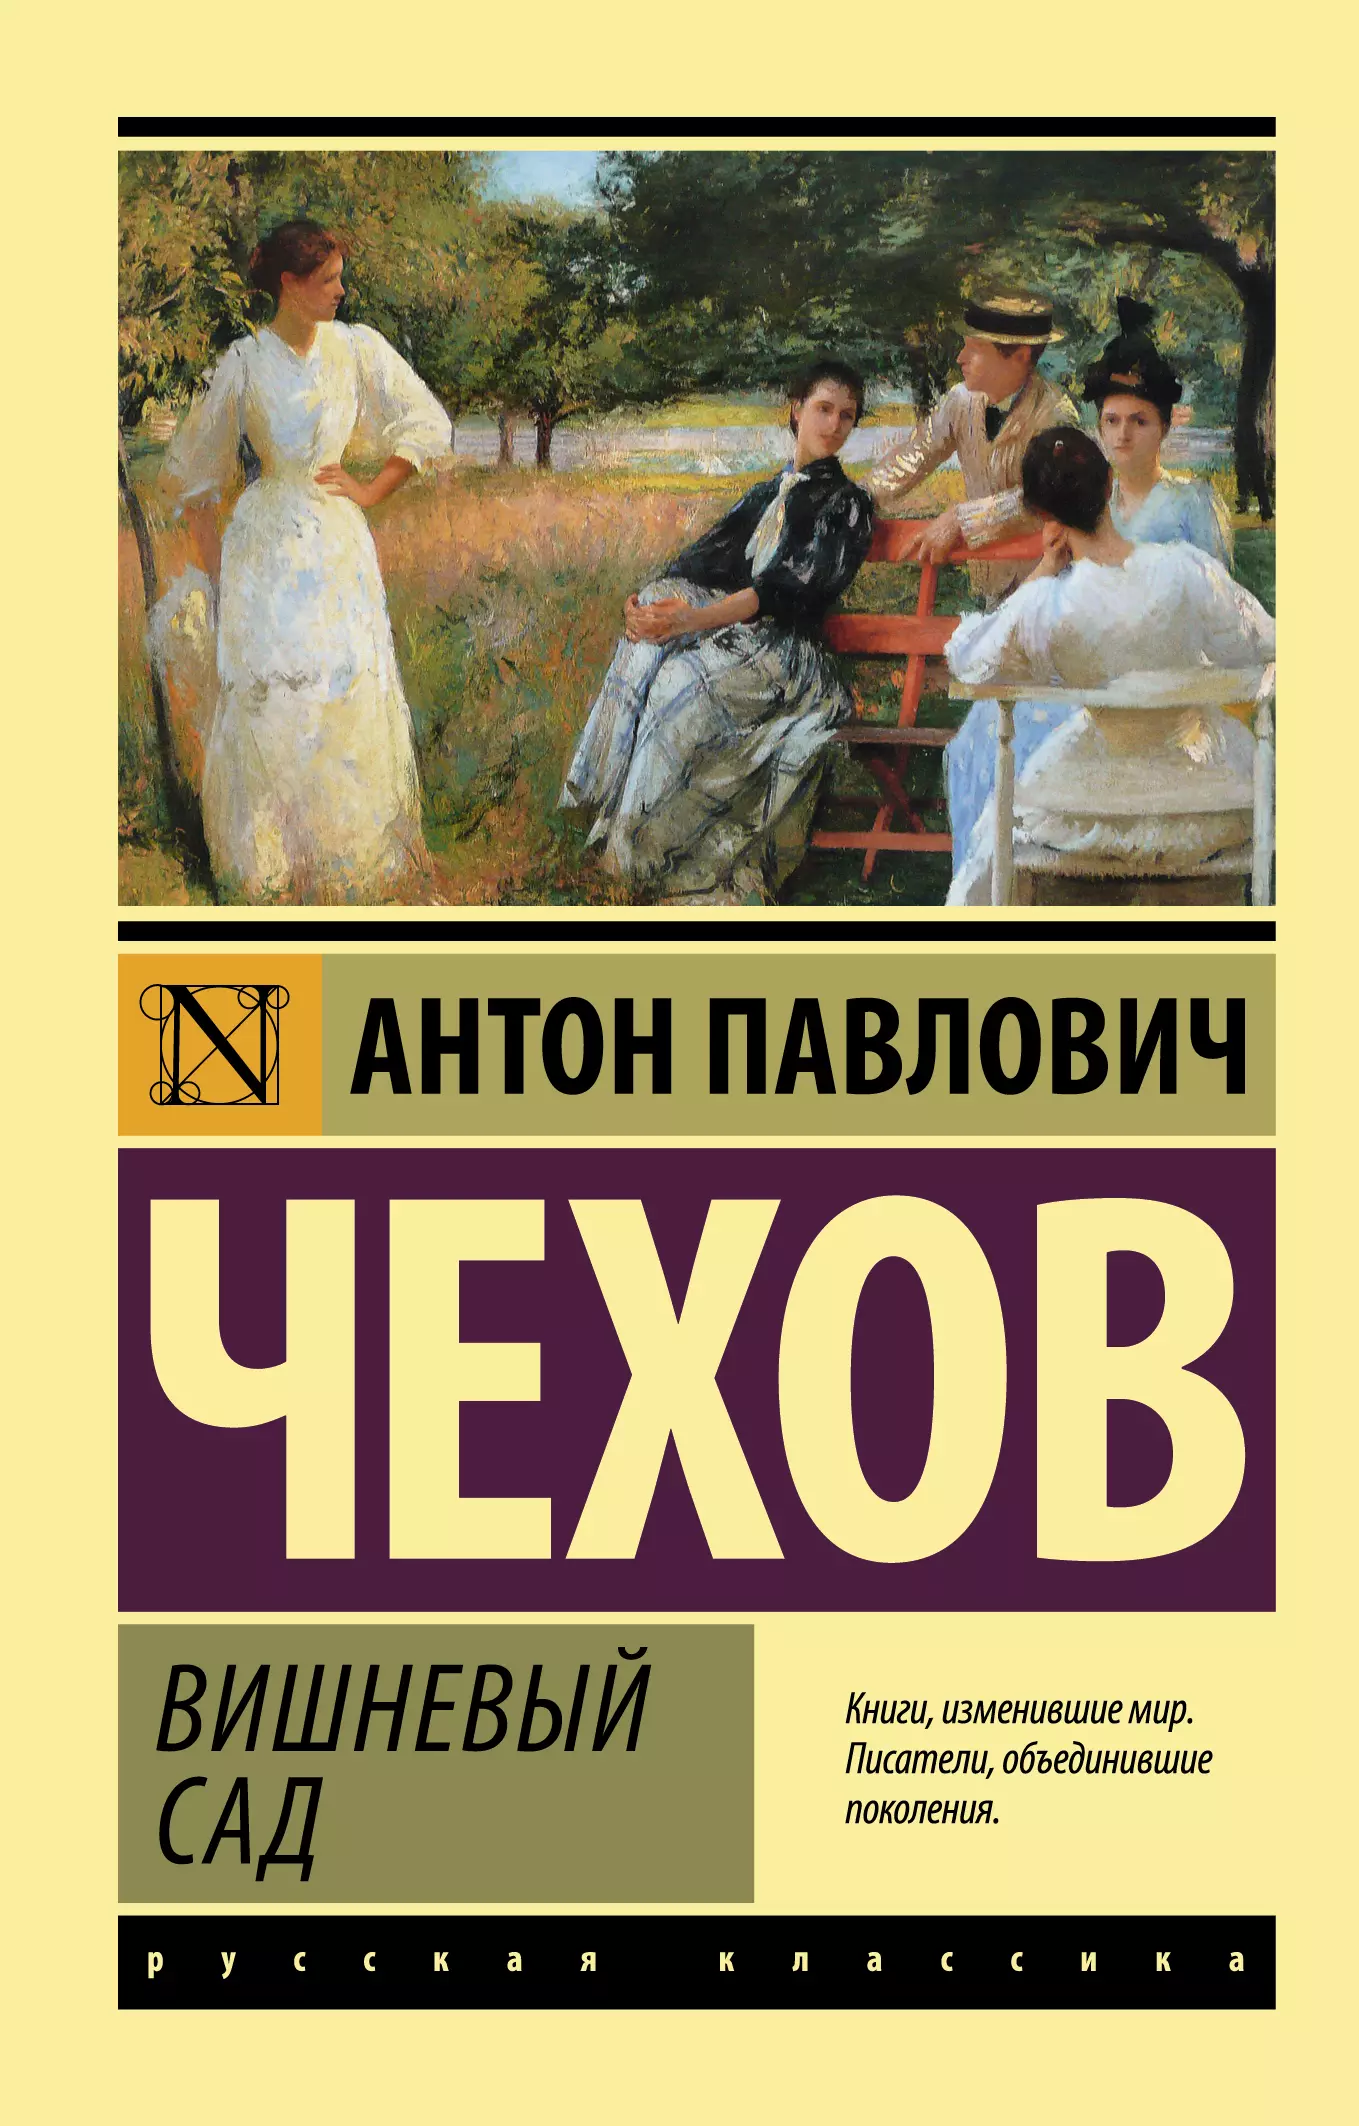 А. П. Чехов «вишнёвый сад» эксклюзивная классика